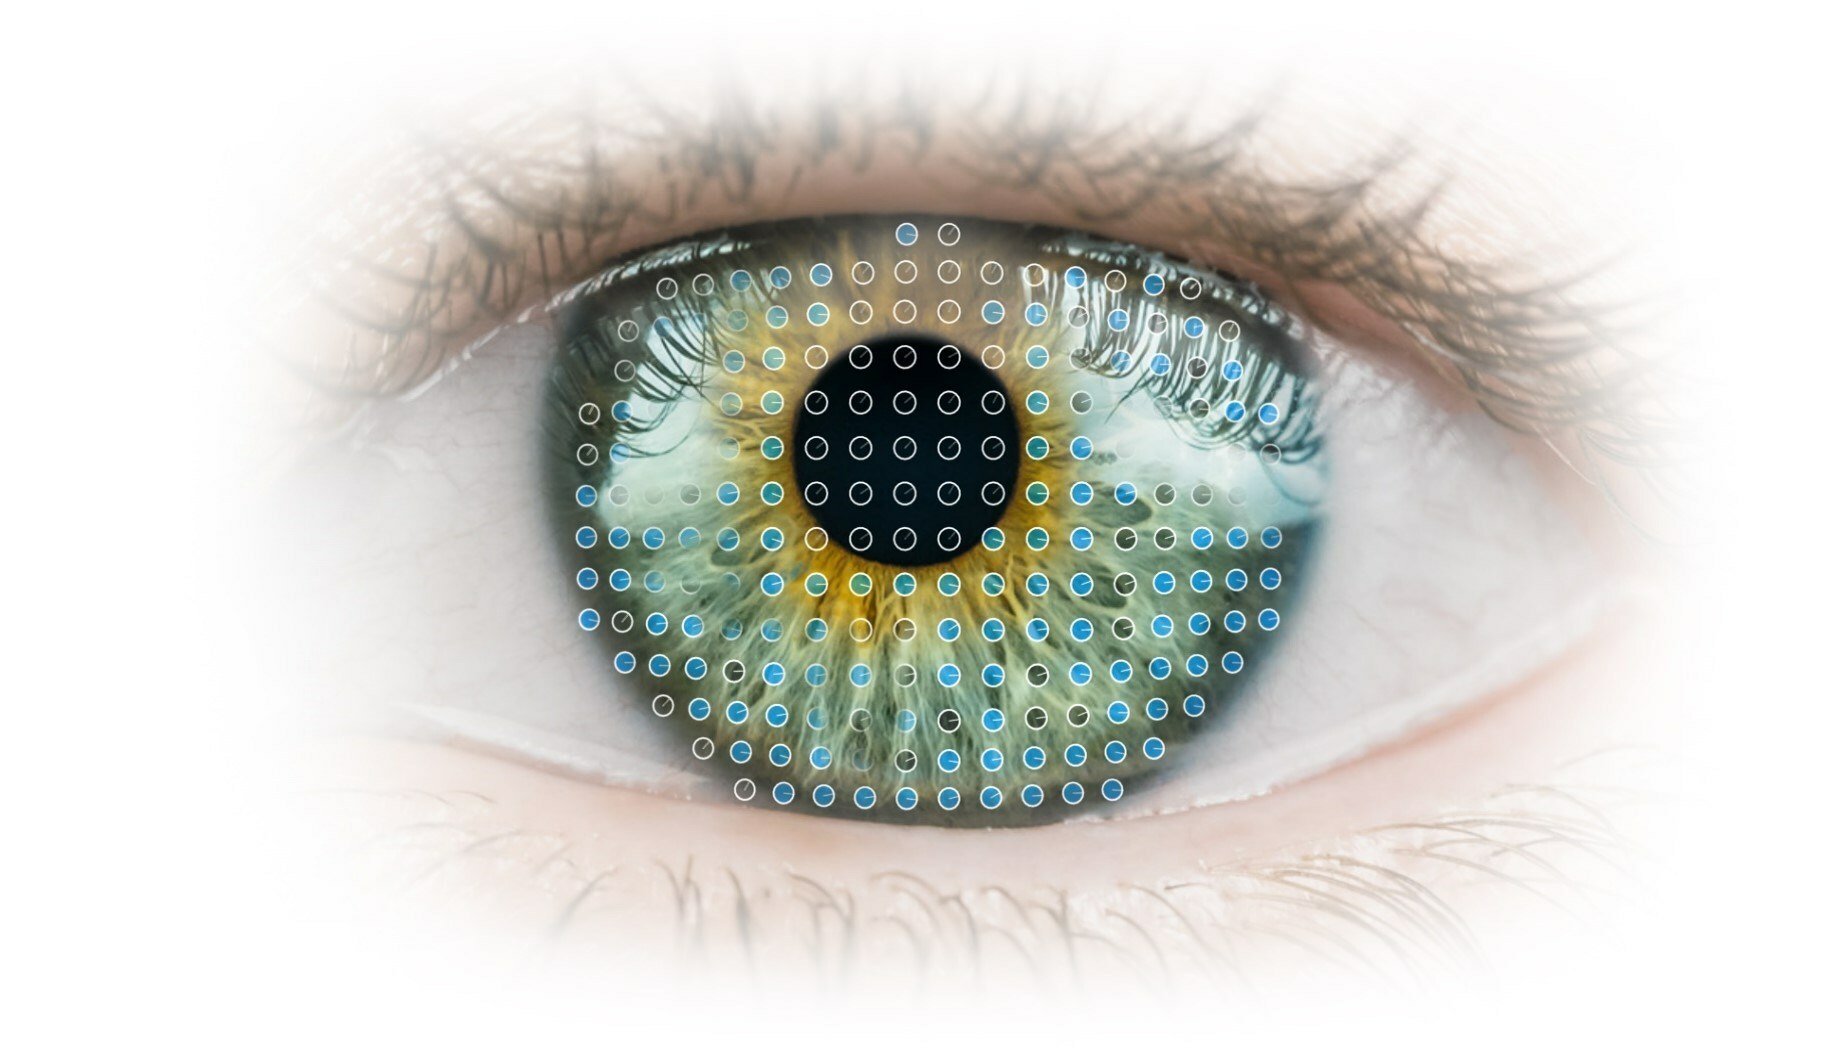 Zeiss Medical Technology eye